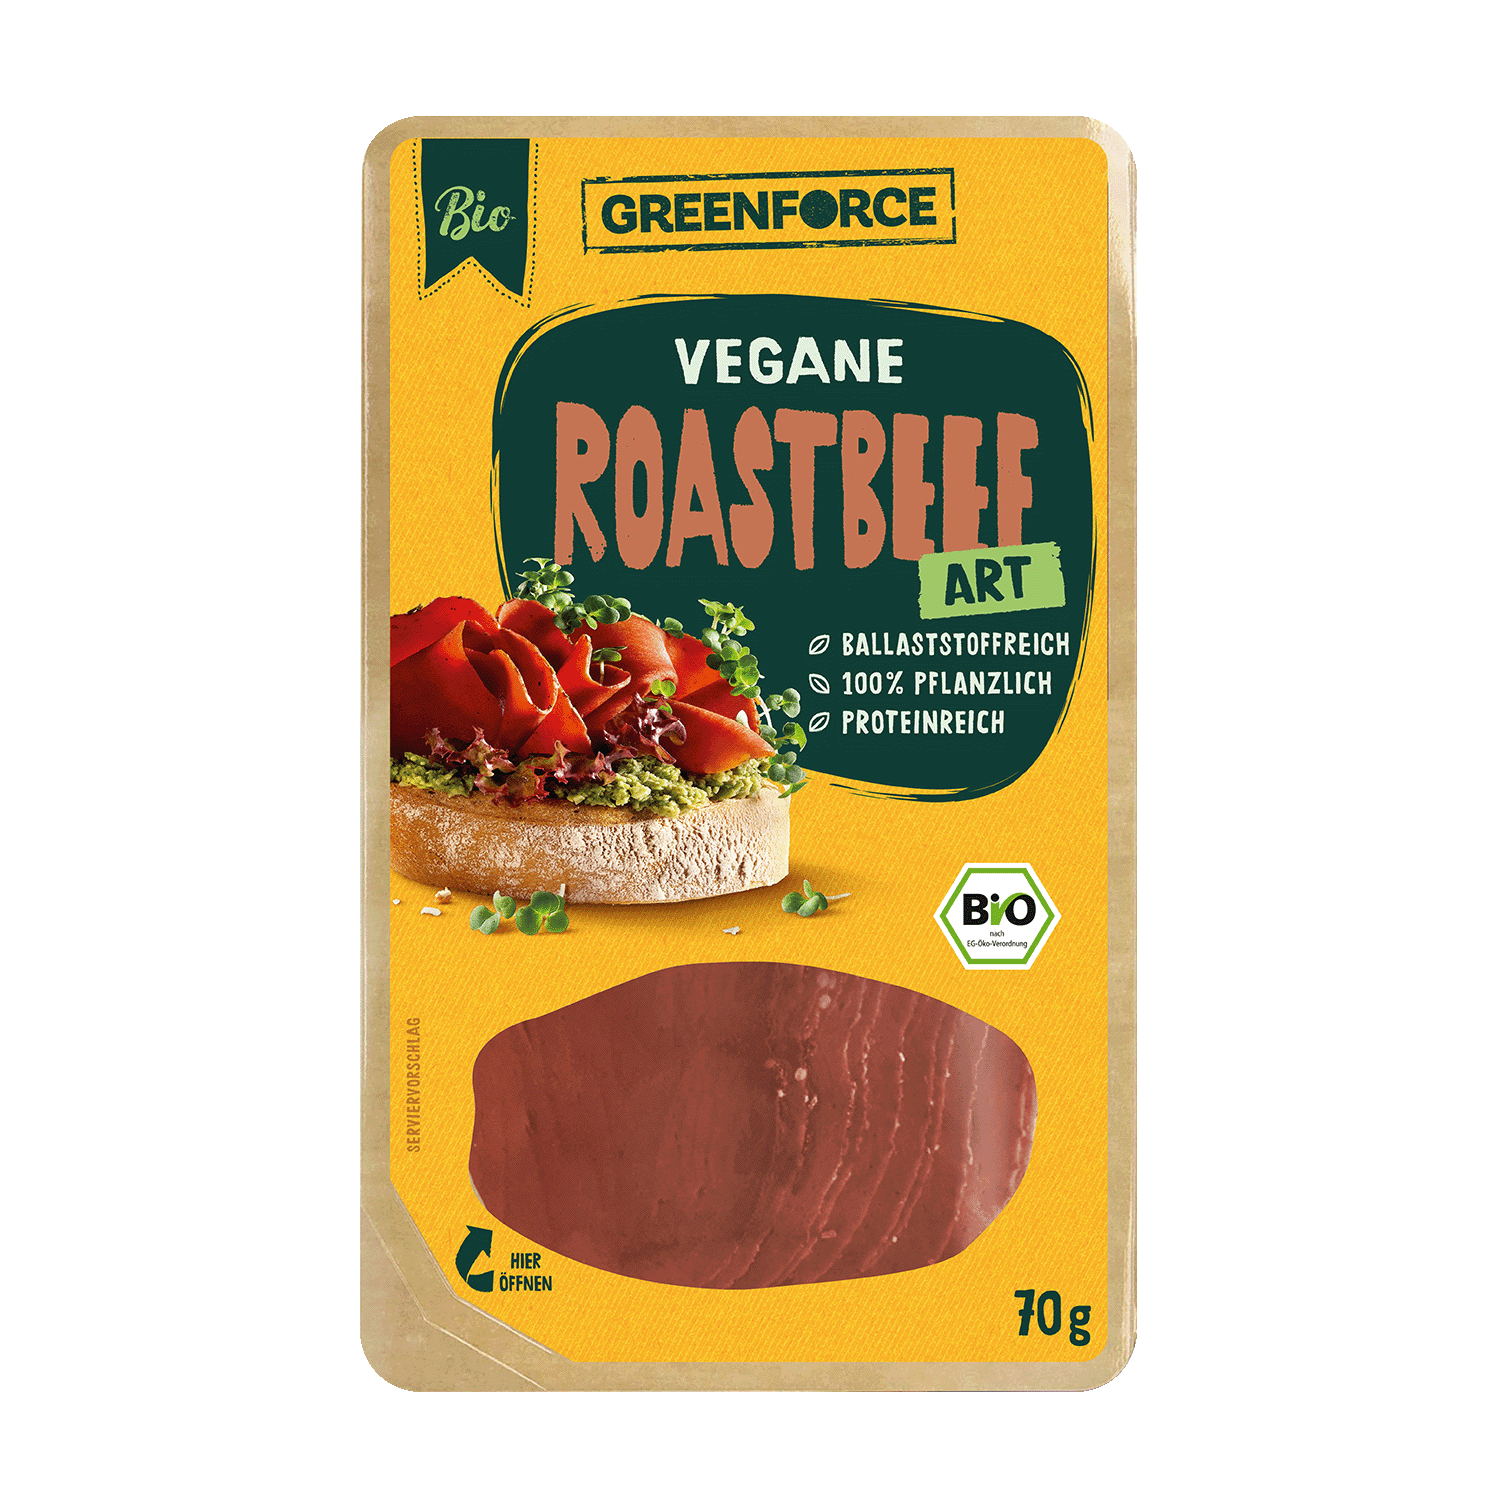 Vegan Roast Beef Style, Organic, 70g